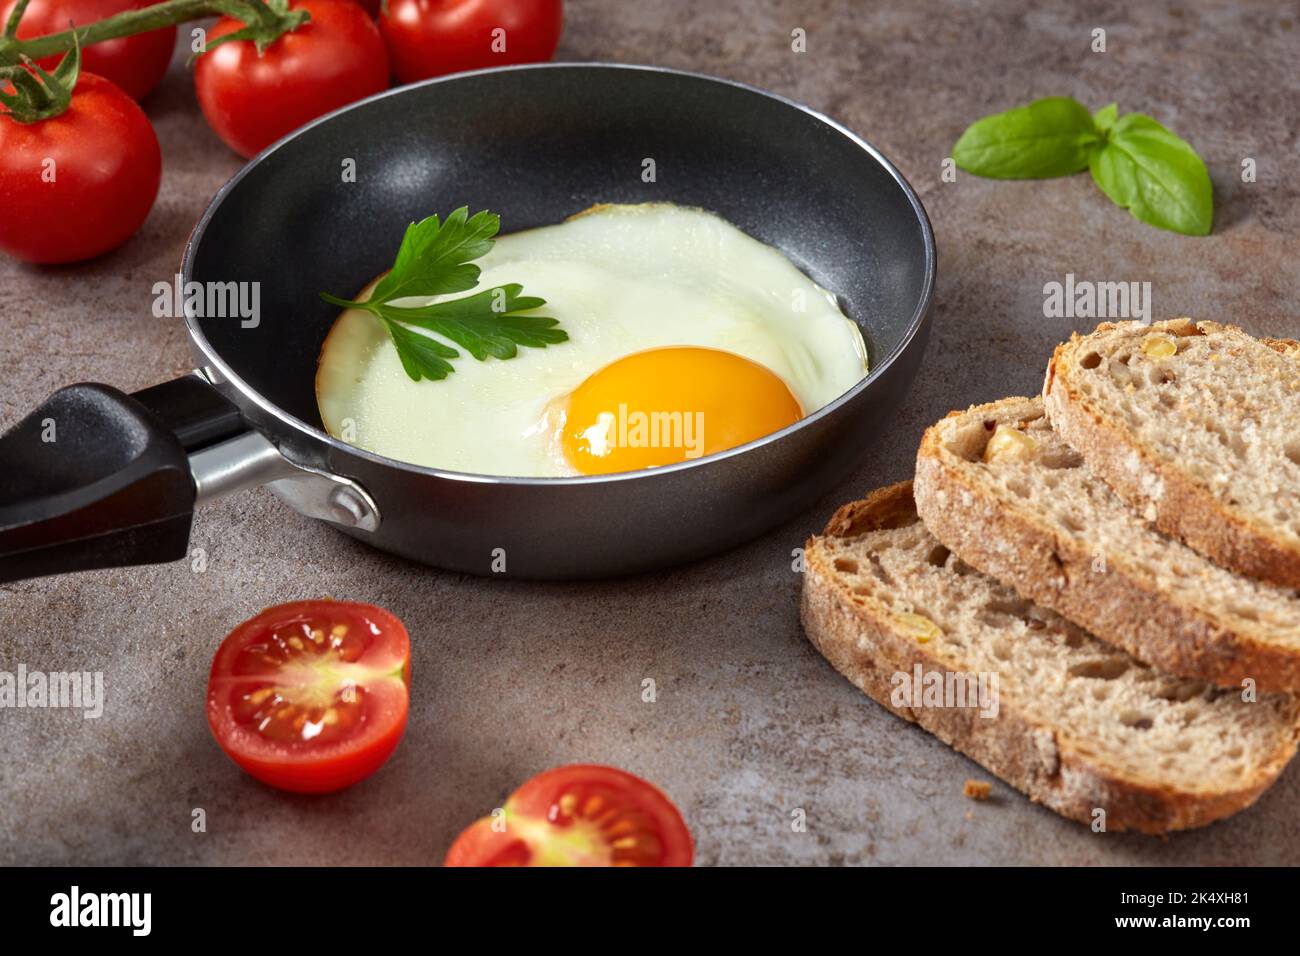 Piccola padella con un uovo fritto, pane e pomodori ciliegini - primo piano Foto Stock